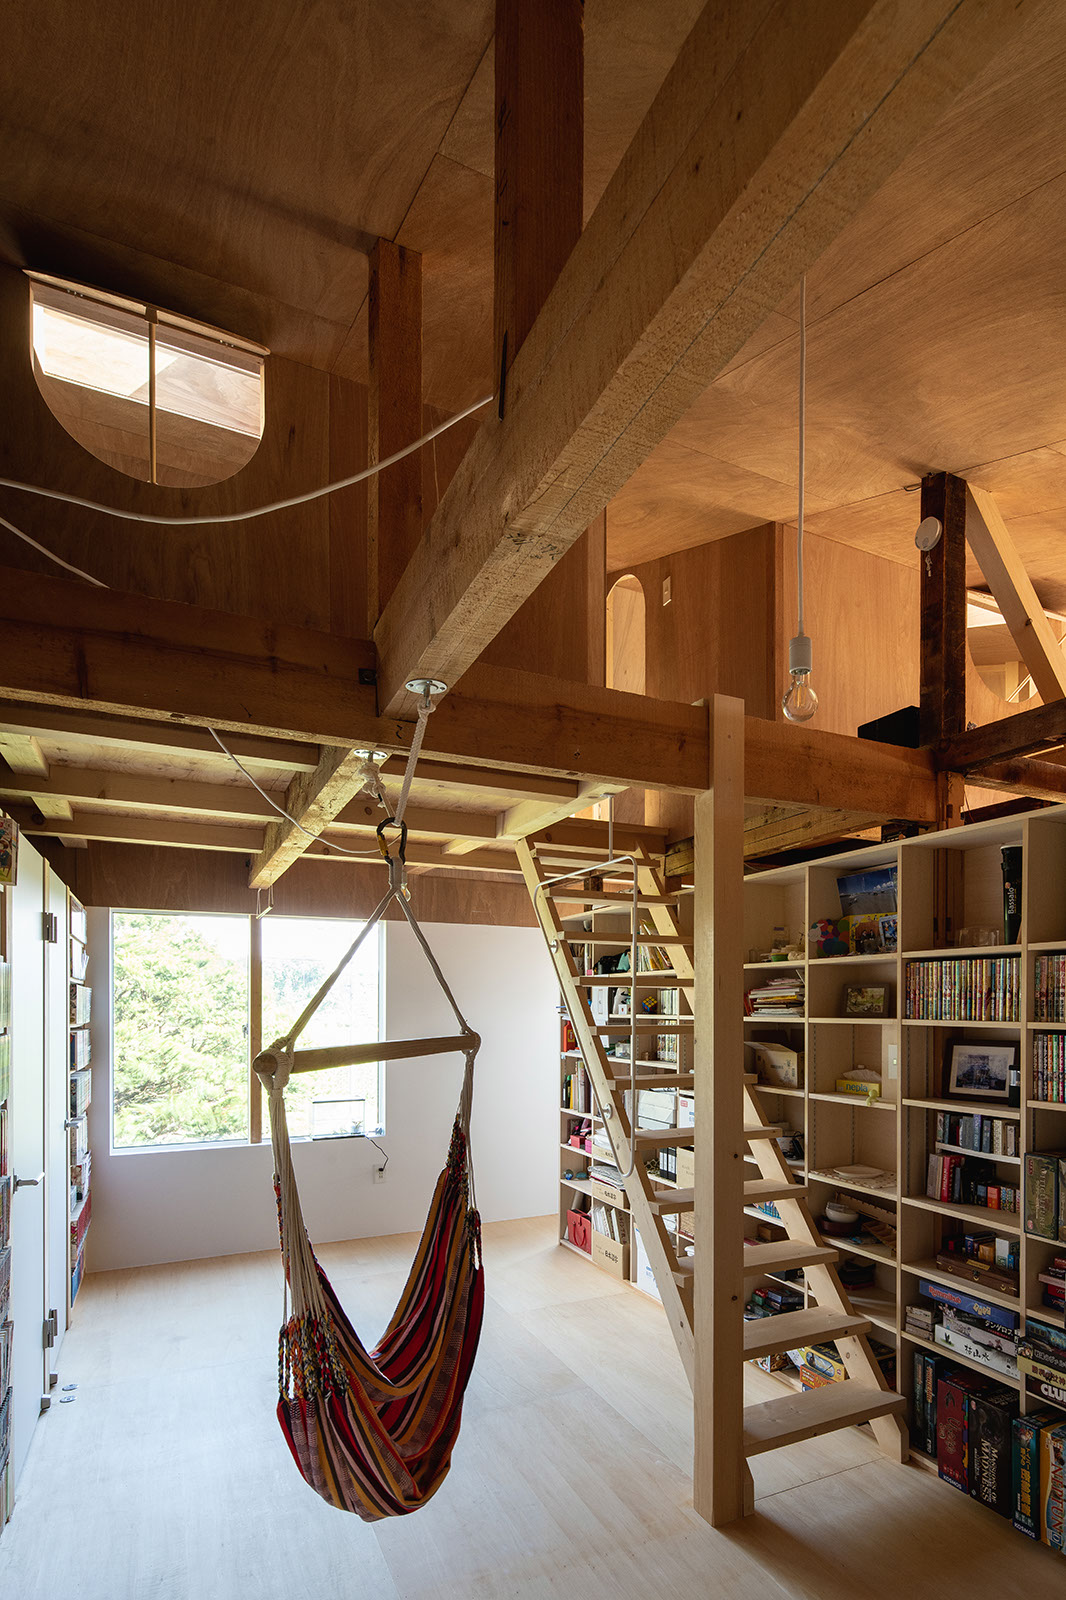 2階の子世帯の住空間は天井板を取り除いて、高さを生かしたつくりに変更